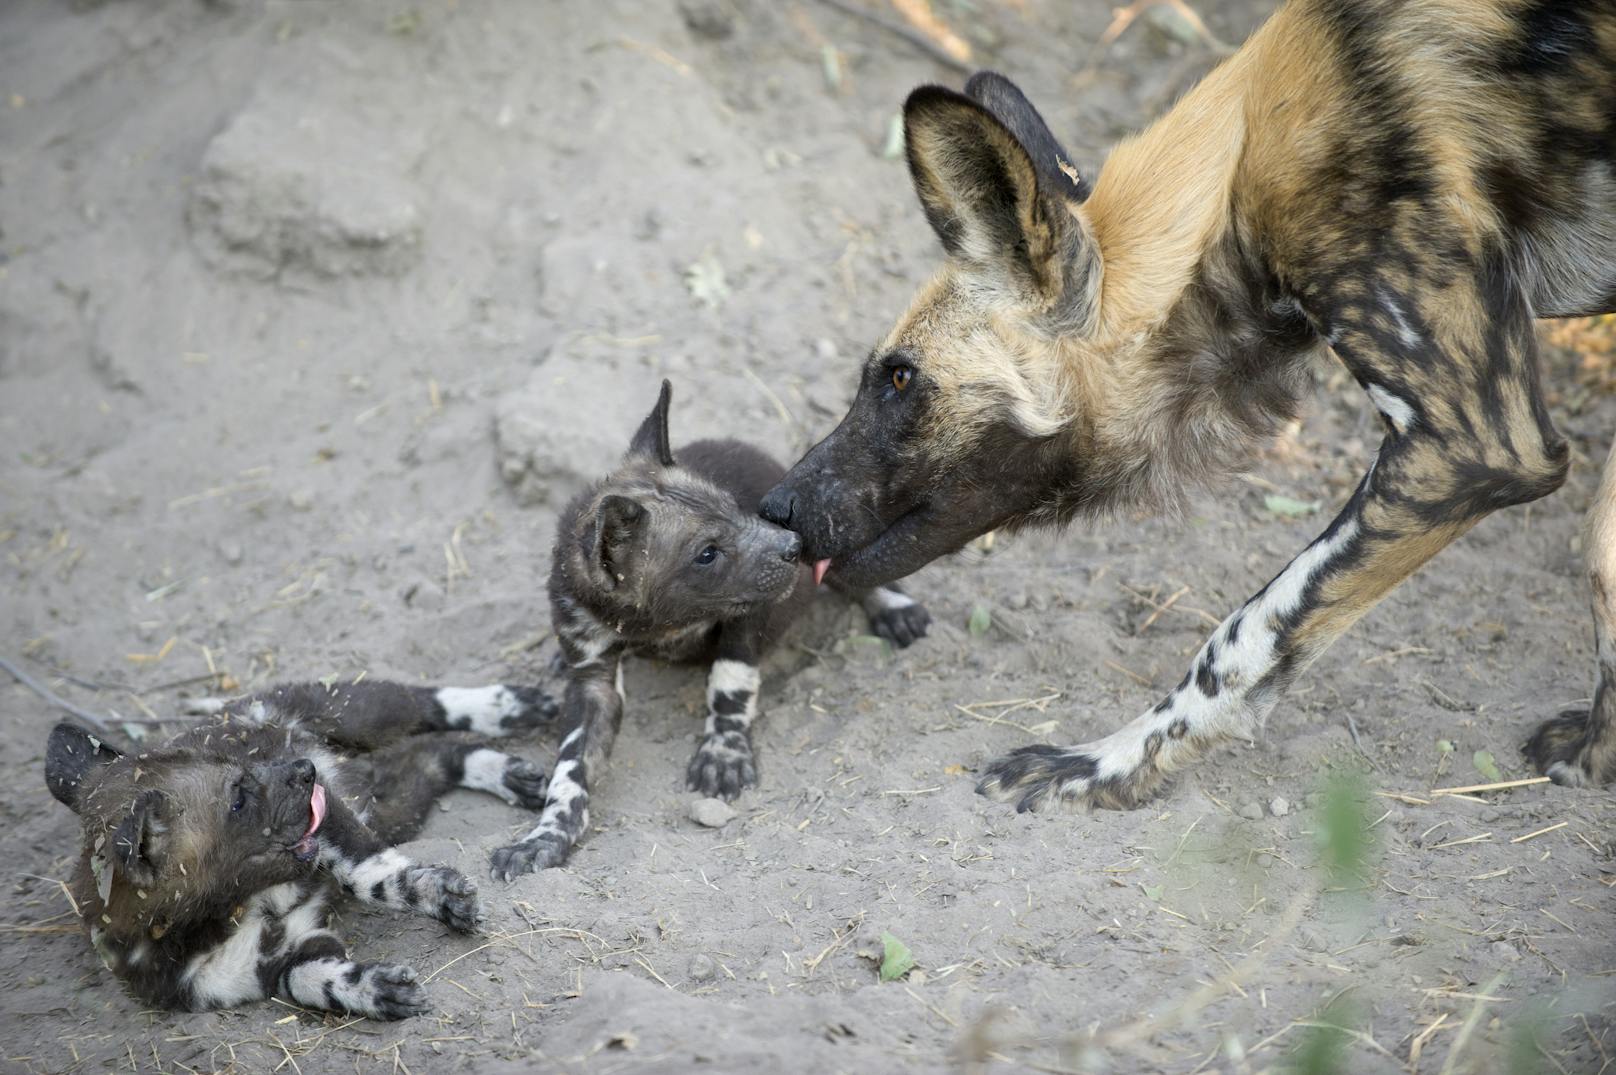 Die Rudel der Afrikanischen Wildhunde bestehen aus einem tierischen Power Couple und ihrem Nachwuchs, sowie weiteren, untergeordneten Erwachsenen. Der Vater packt mit an und stellt sicher, dass seine Jungen als Erstes zu fressen bekommen. Andere männliche Wildhunde werden als Babysitter eingeteilt.